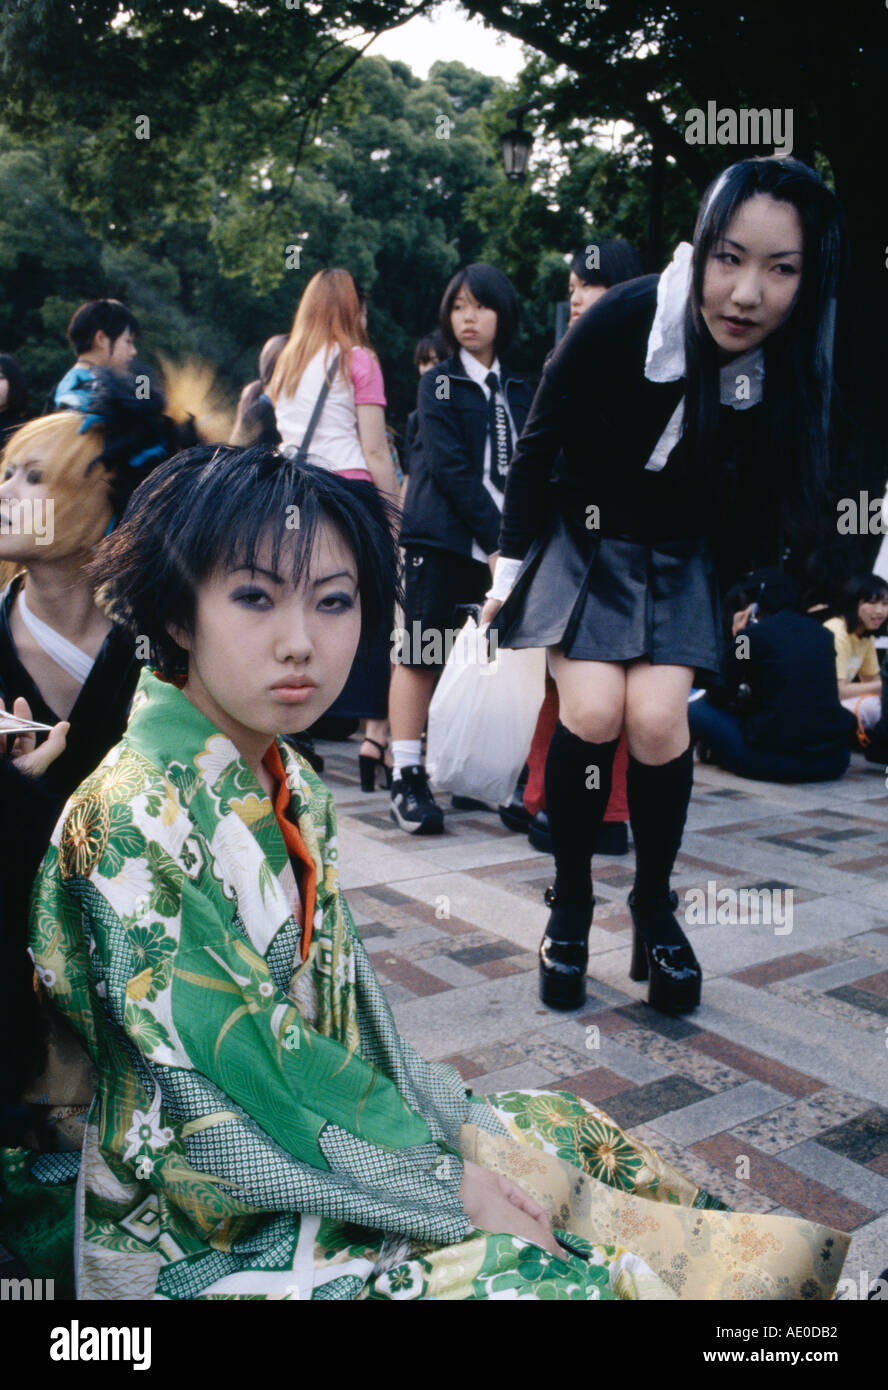 Youth Culture Harajuku Tokyo Japan Stock Photo